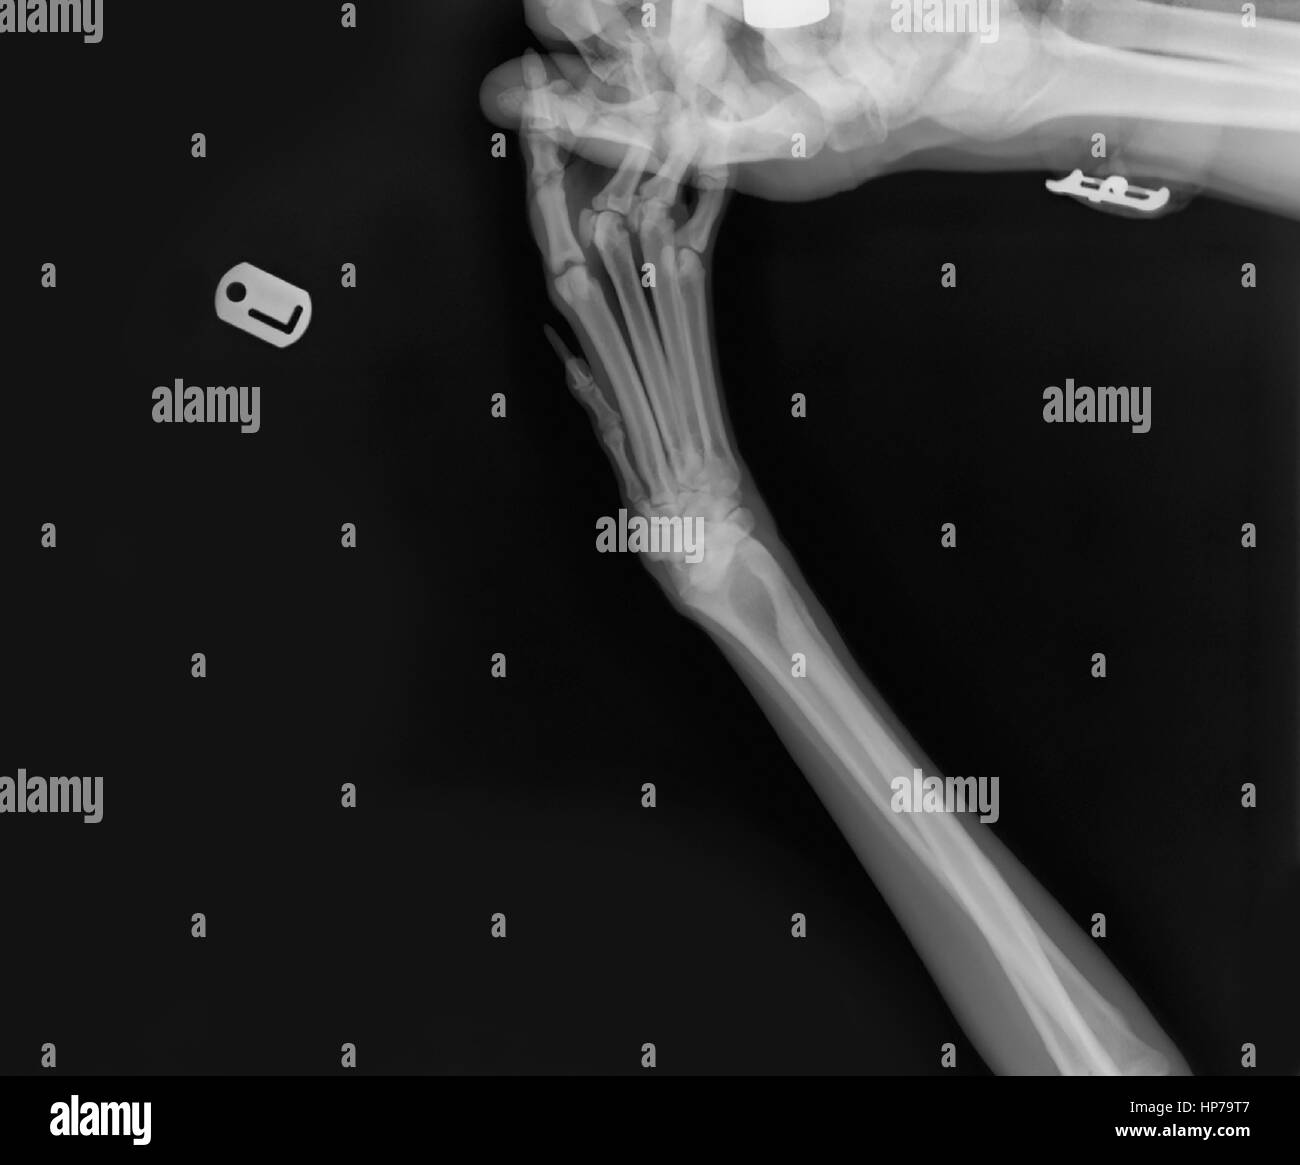 Rayos X de un perro de la pata delantera izquierda en una cirugía veterinaria el técnico la mano que sostiene la pata puede verse Foto de stock